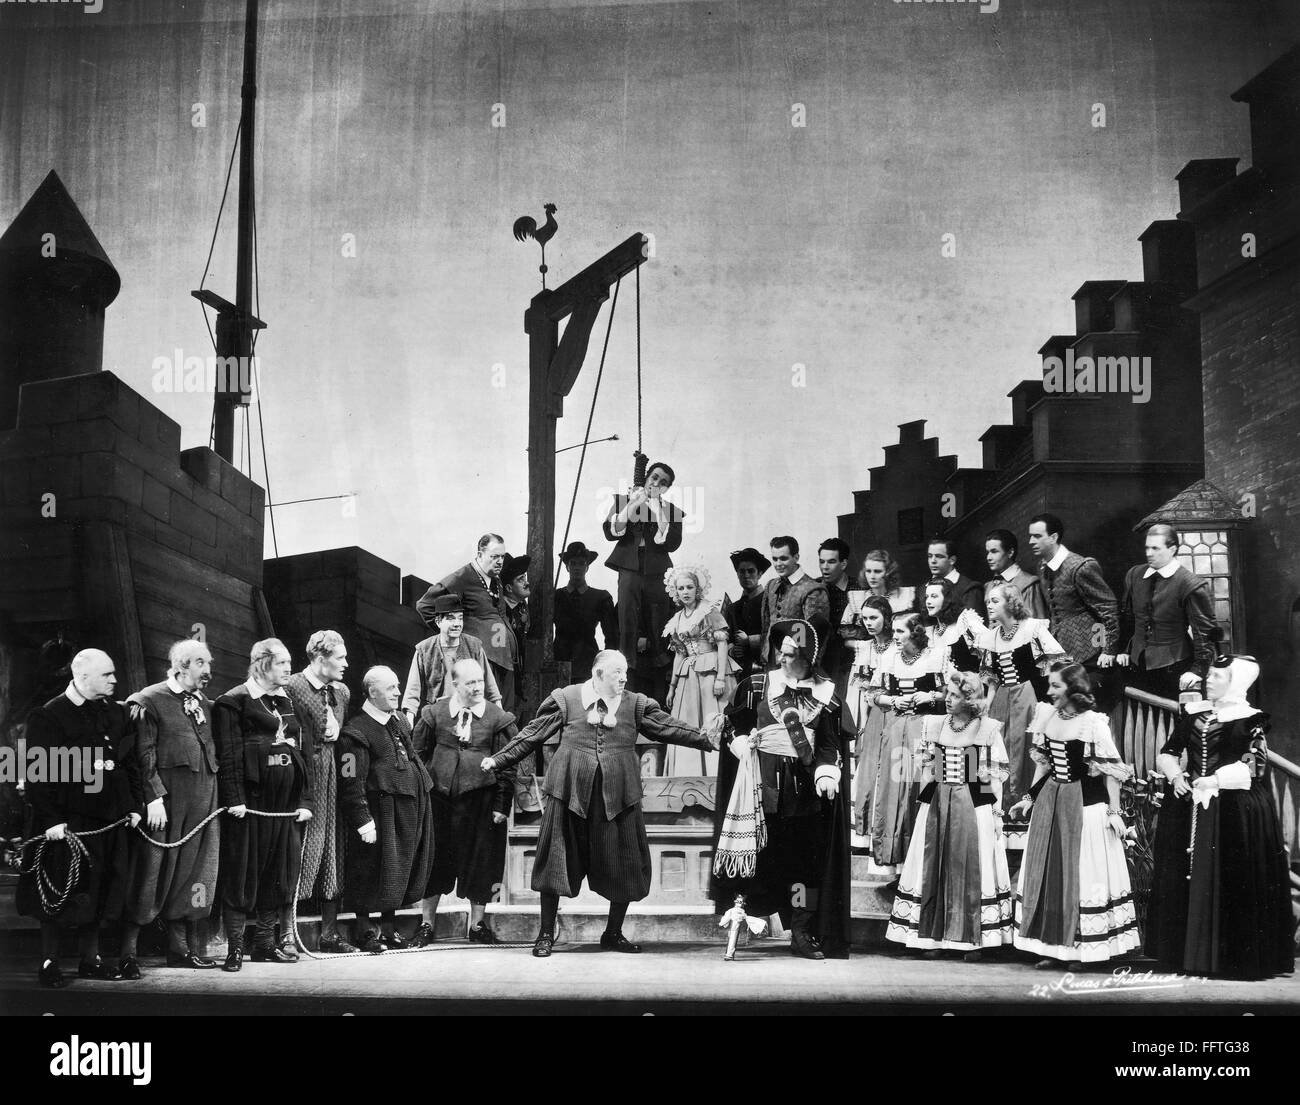 KNICCURBOCKER vacaciones. /NScene Kniccurbocker desde el musical 'Vacaciones' por Maxwell Anderson y Kurt Weill, dirigida en Broadway por Joshua Logan, 1938. Foto de stock